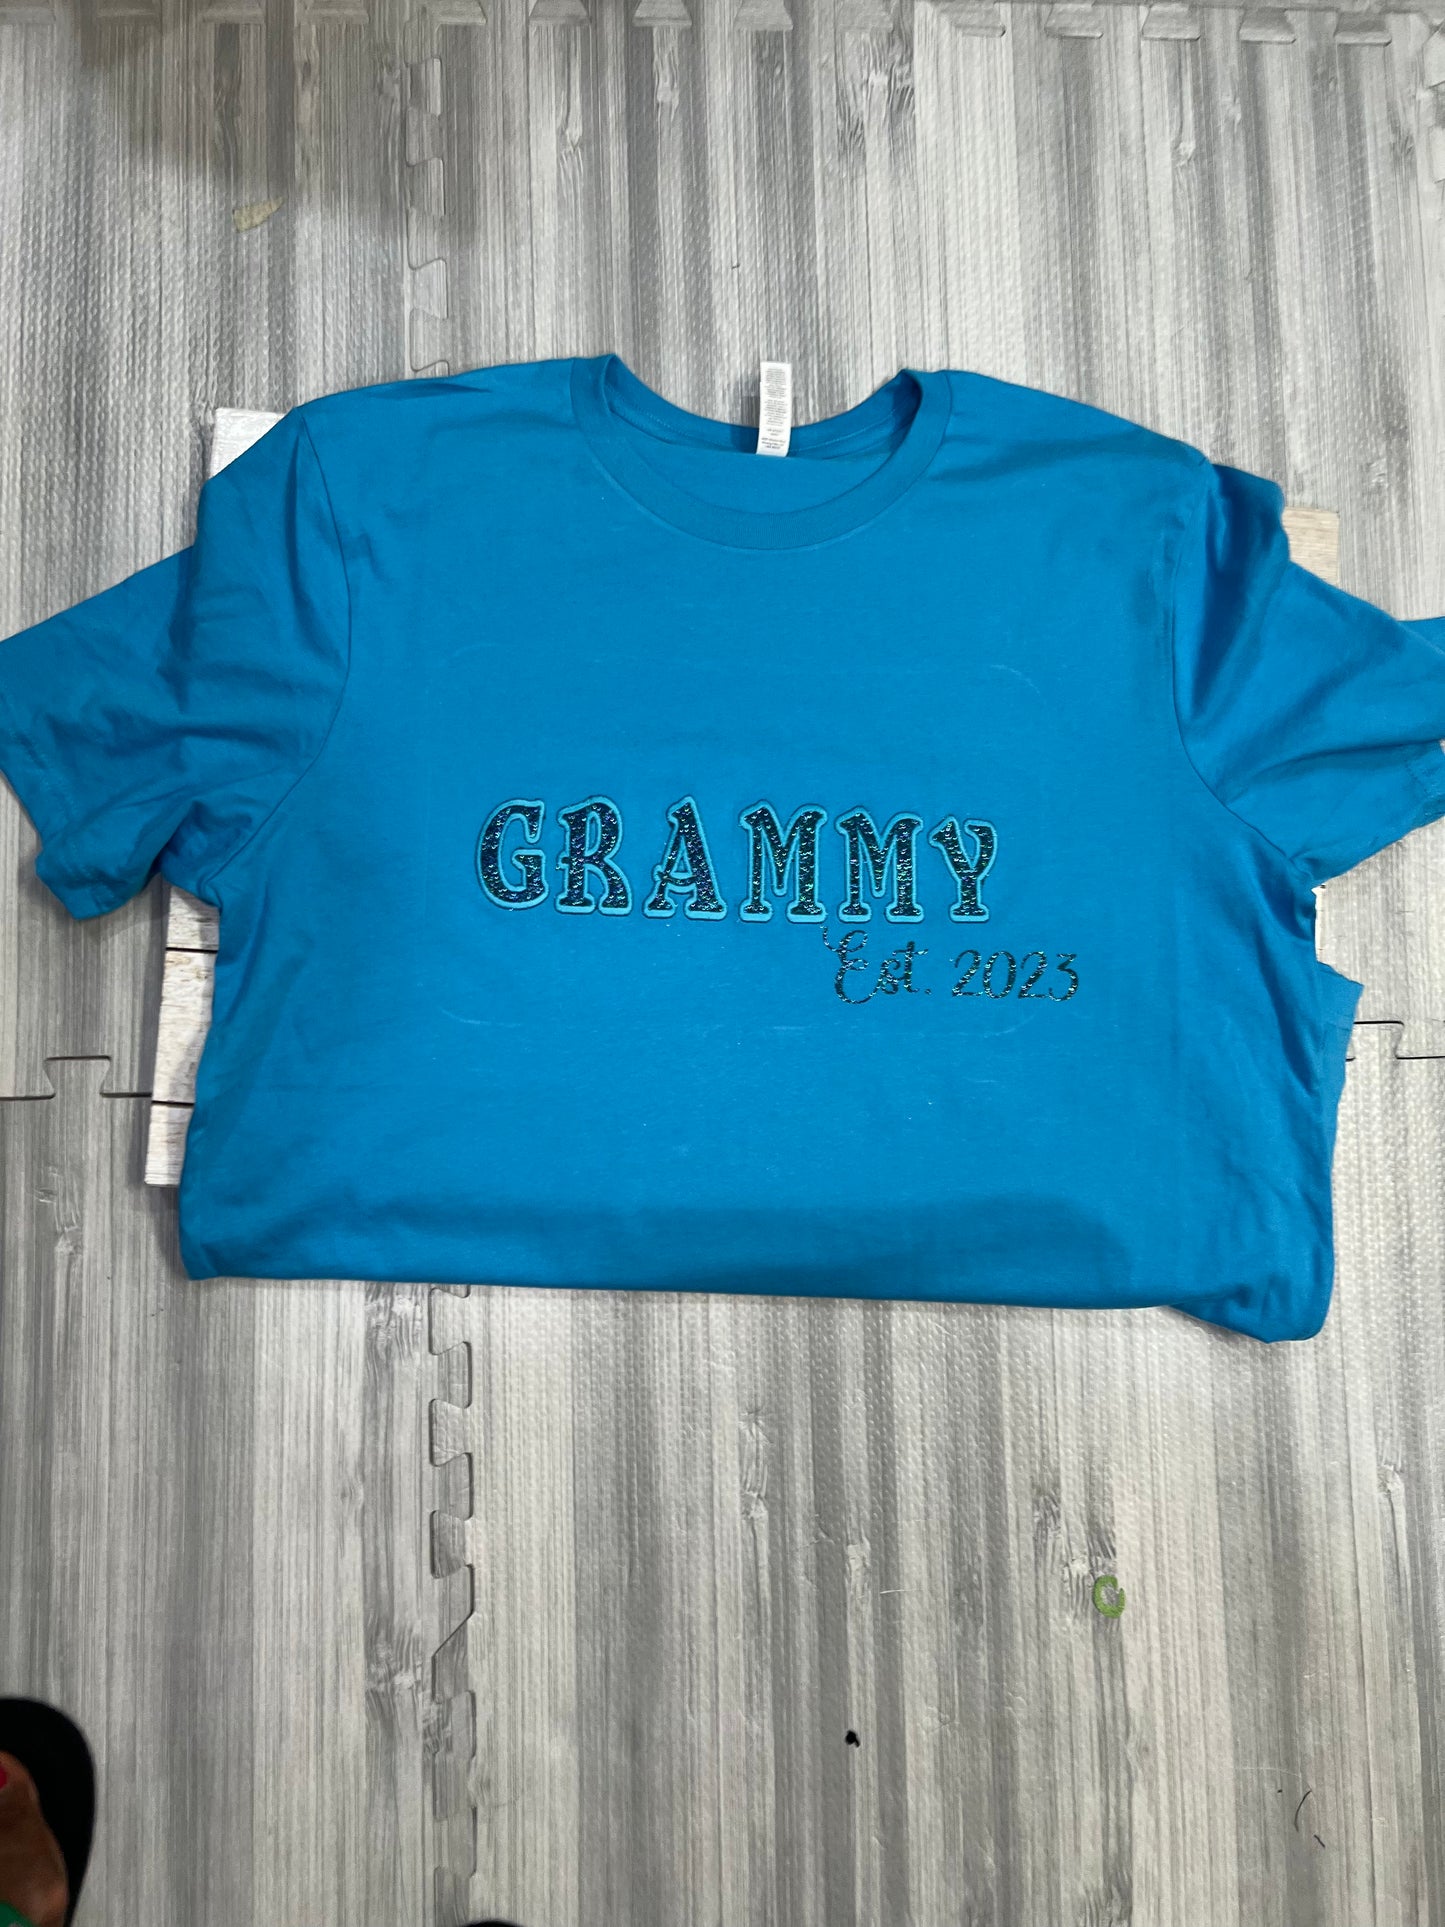 Grammy Glam Shirts